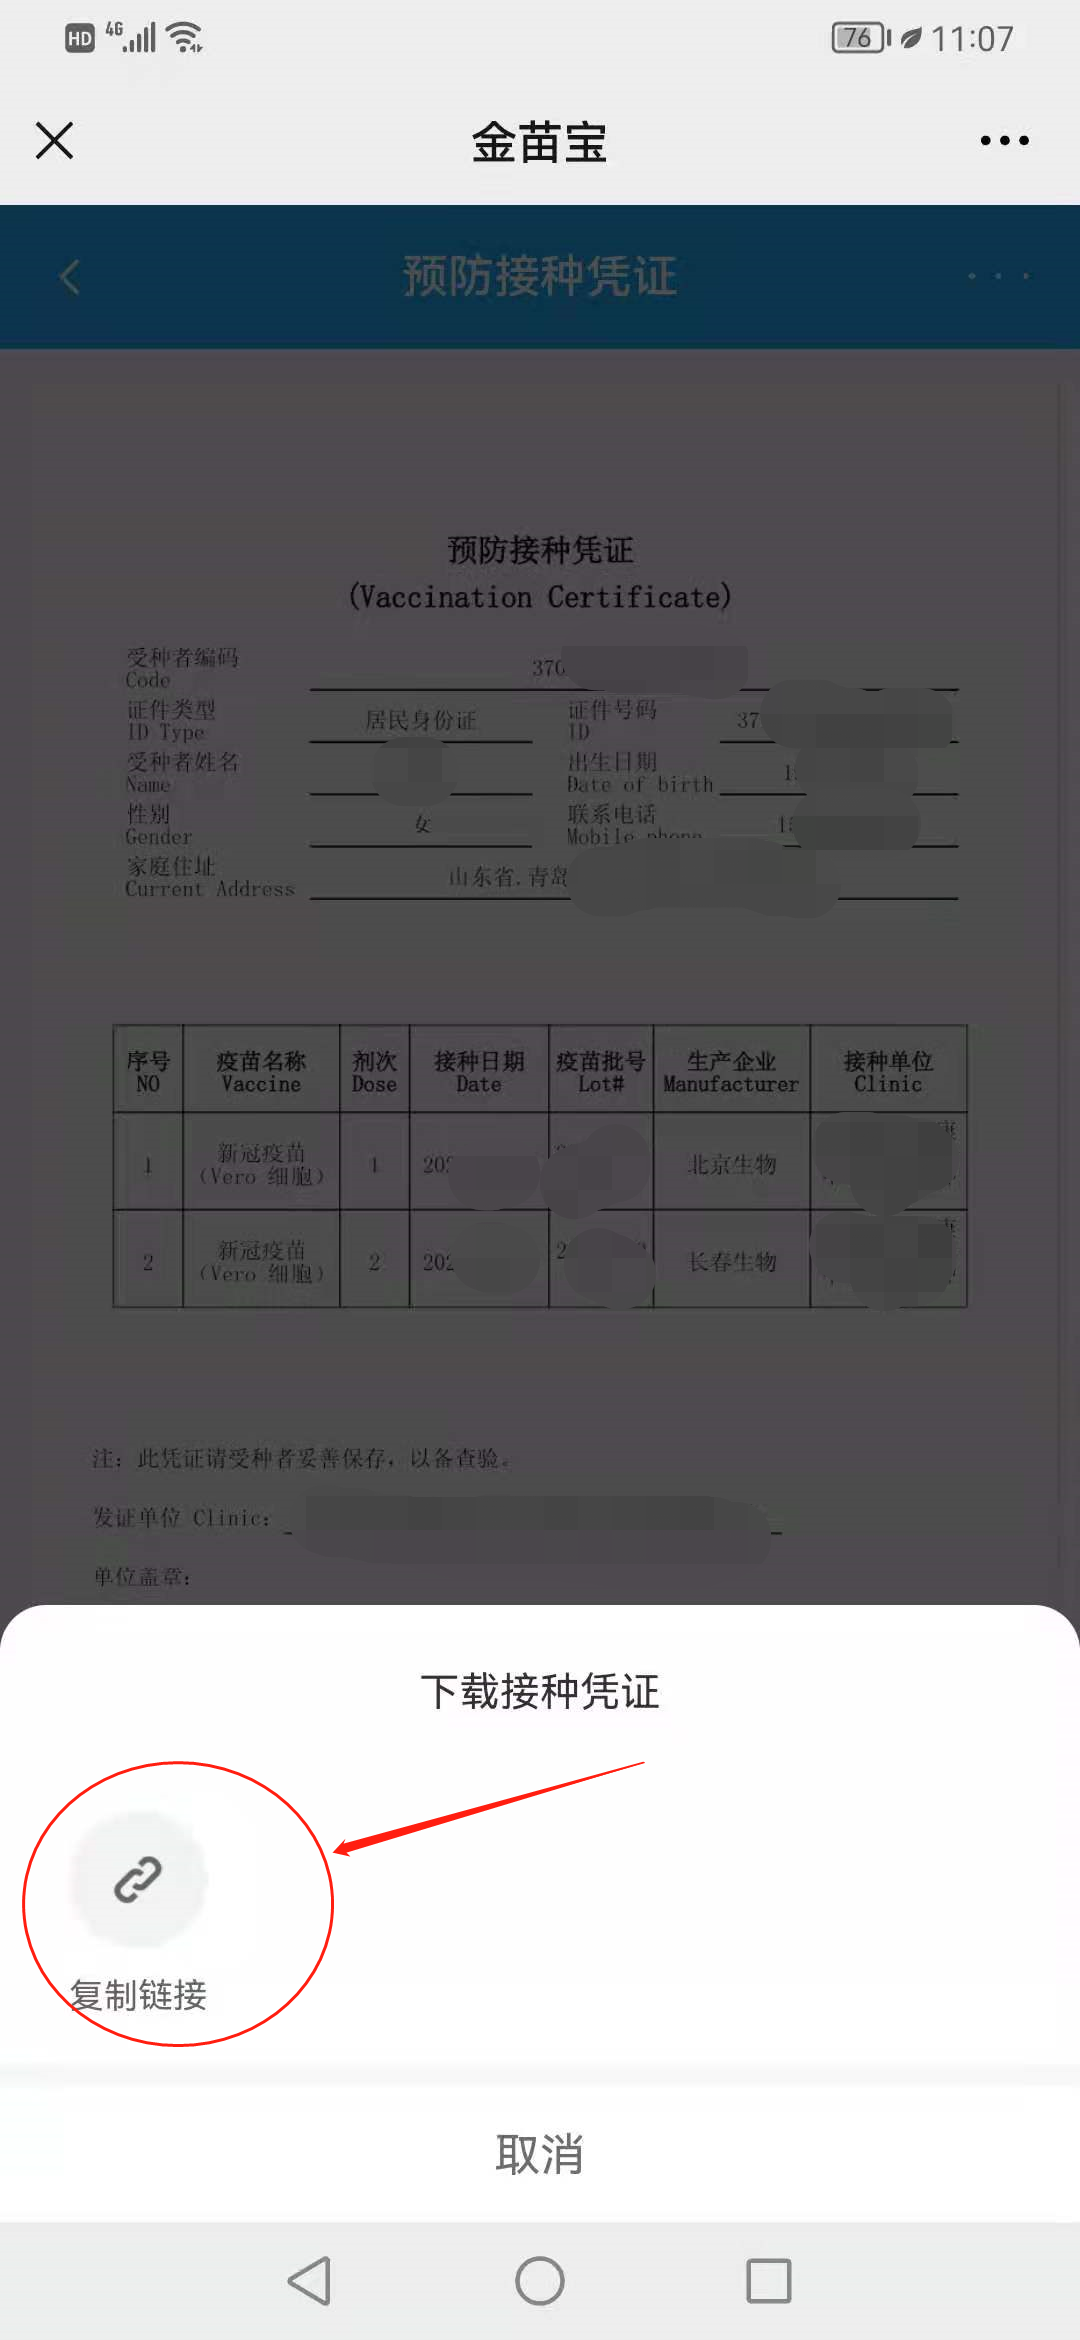 新冠疫苗接种凭证中文版英文版均可自助打印免排队免预约